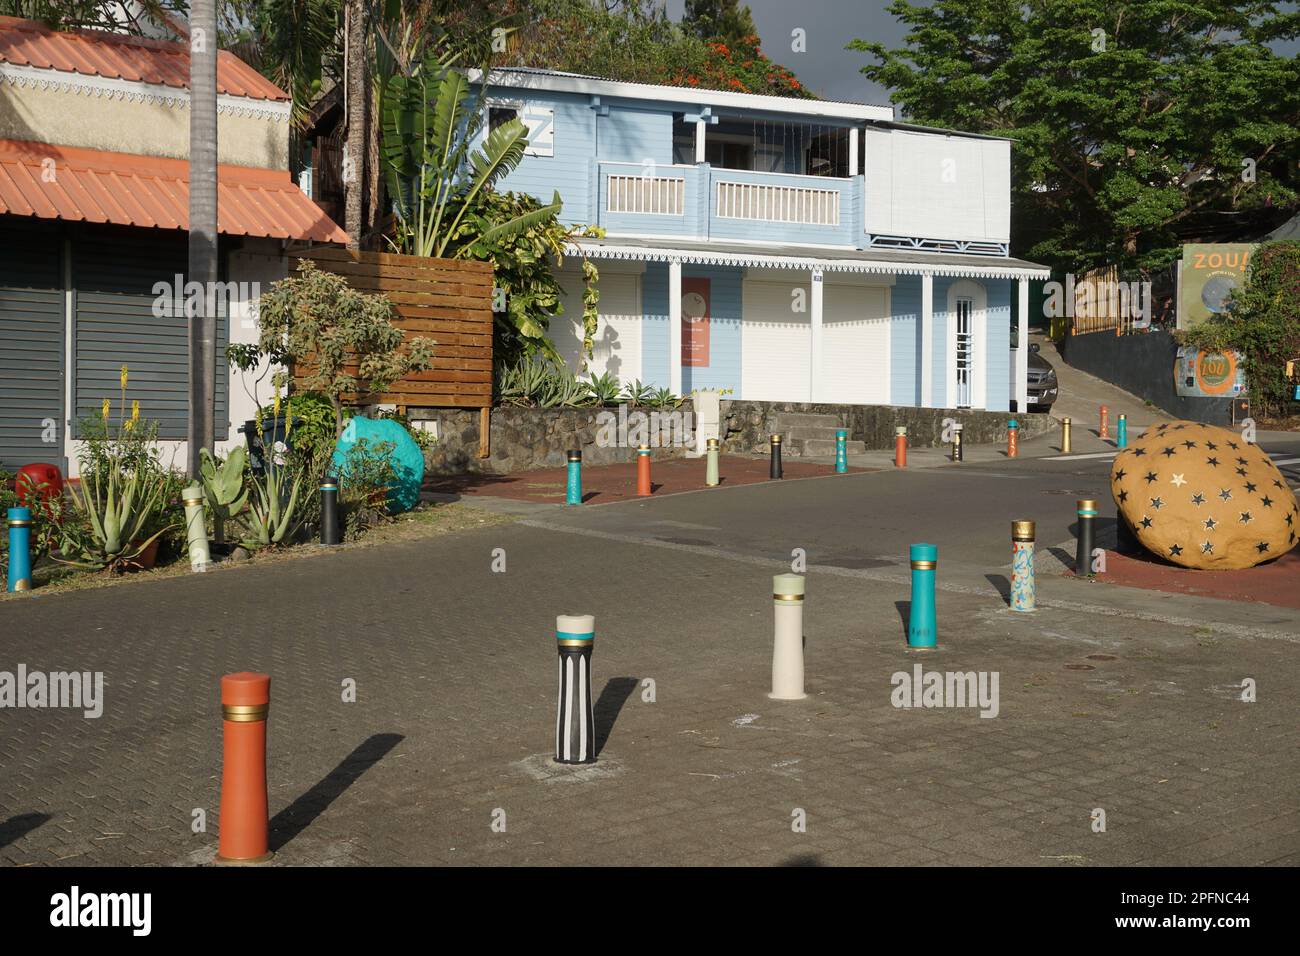 Paysage scène du quartier coloré sur l'île tropicale de la Réunion, France Banque D'Images